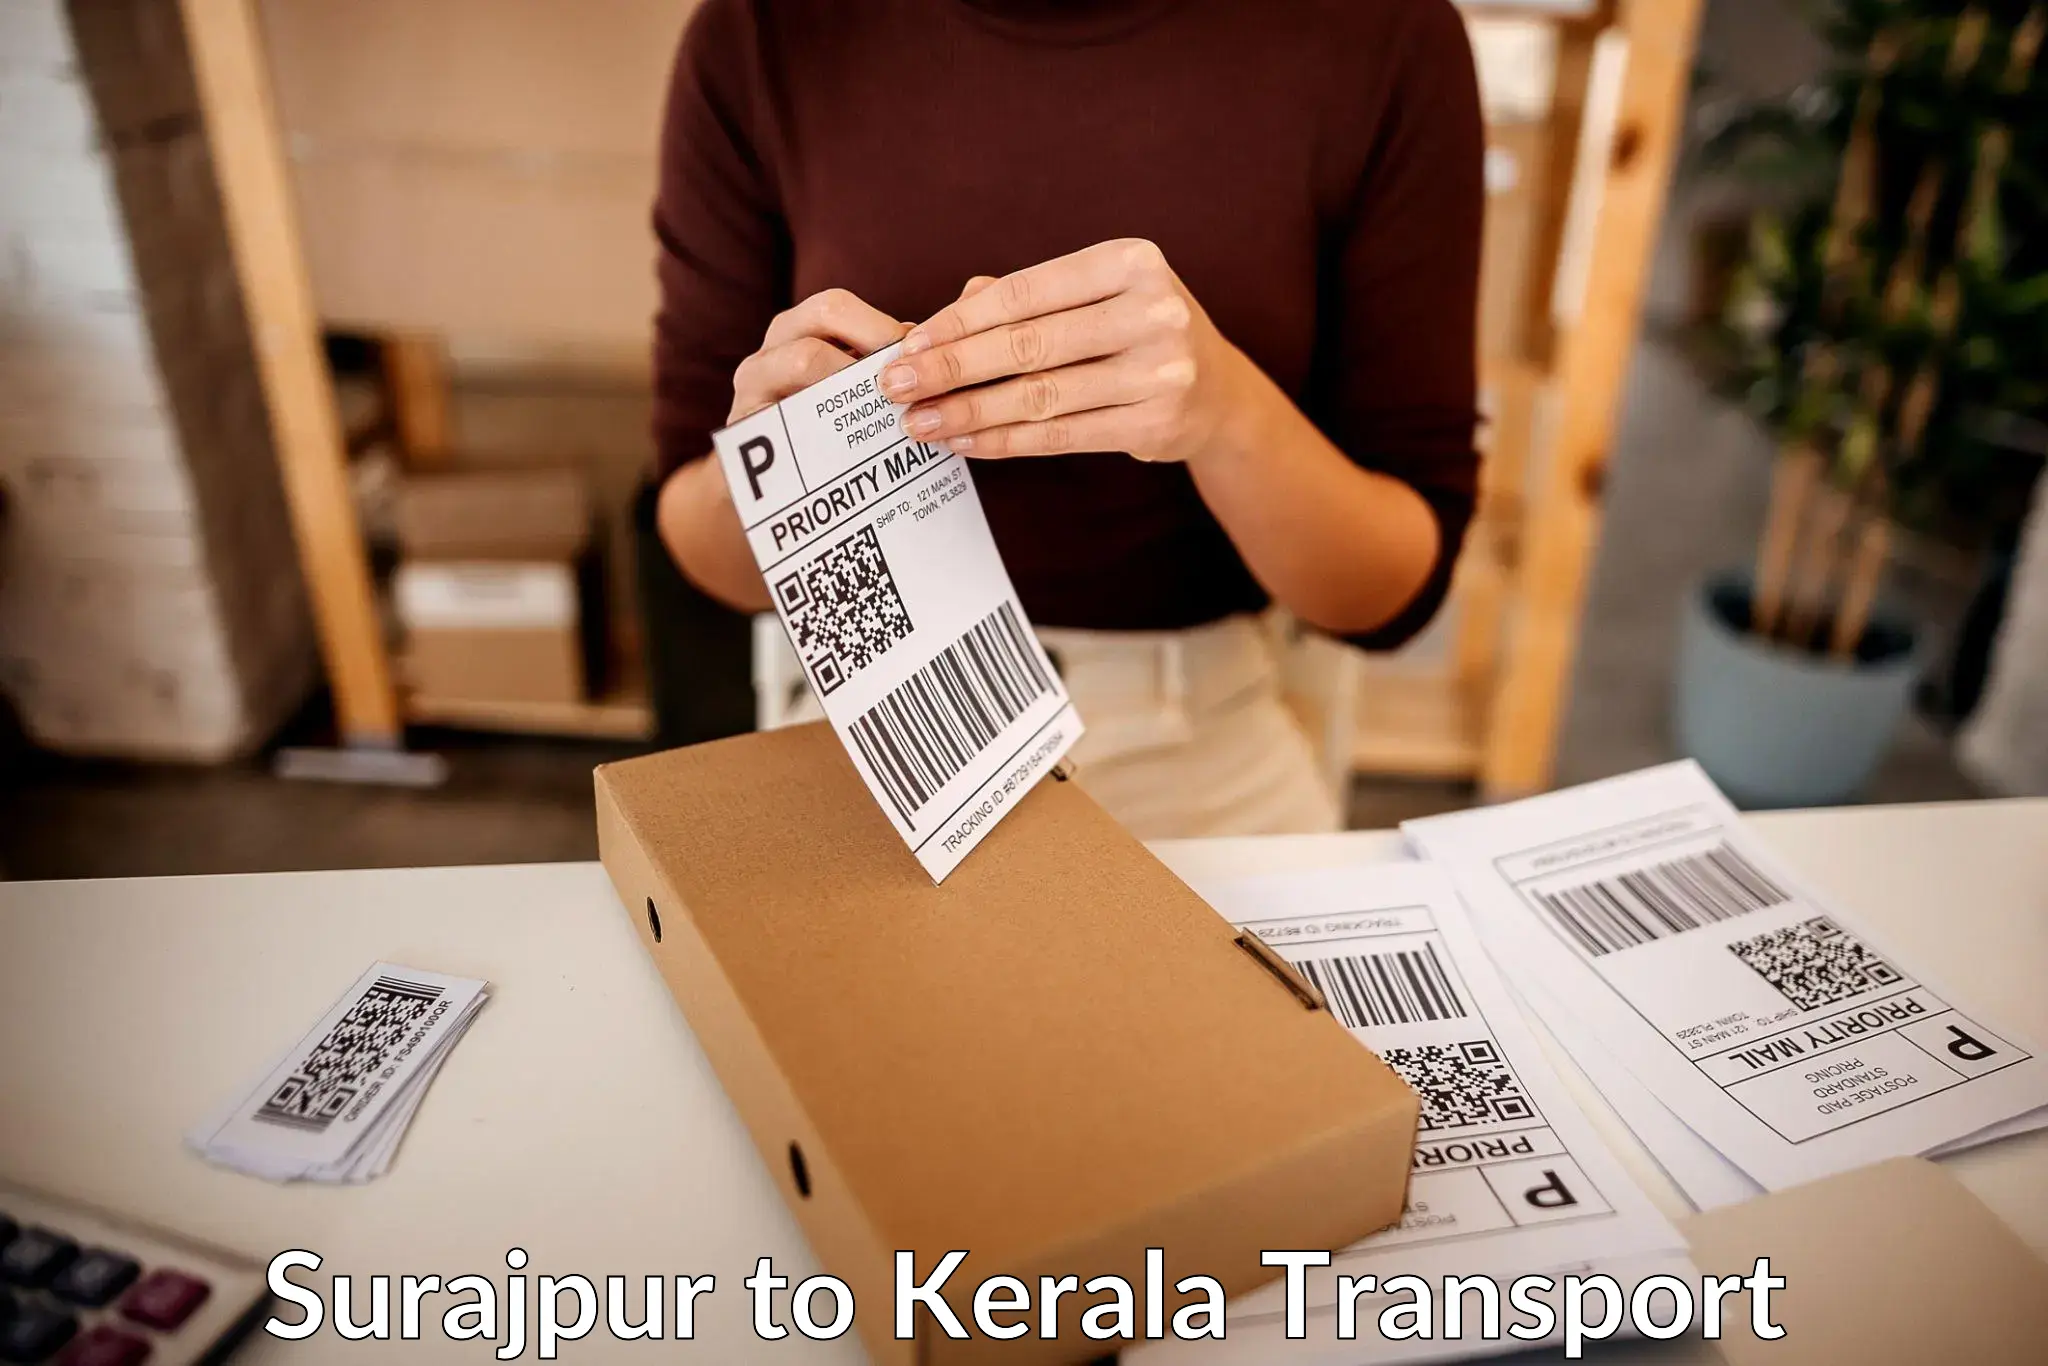 Cargo transportation services in Surajpur to Thrissur